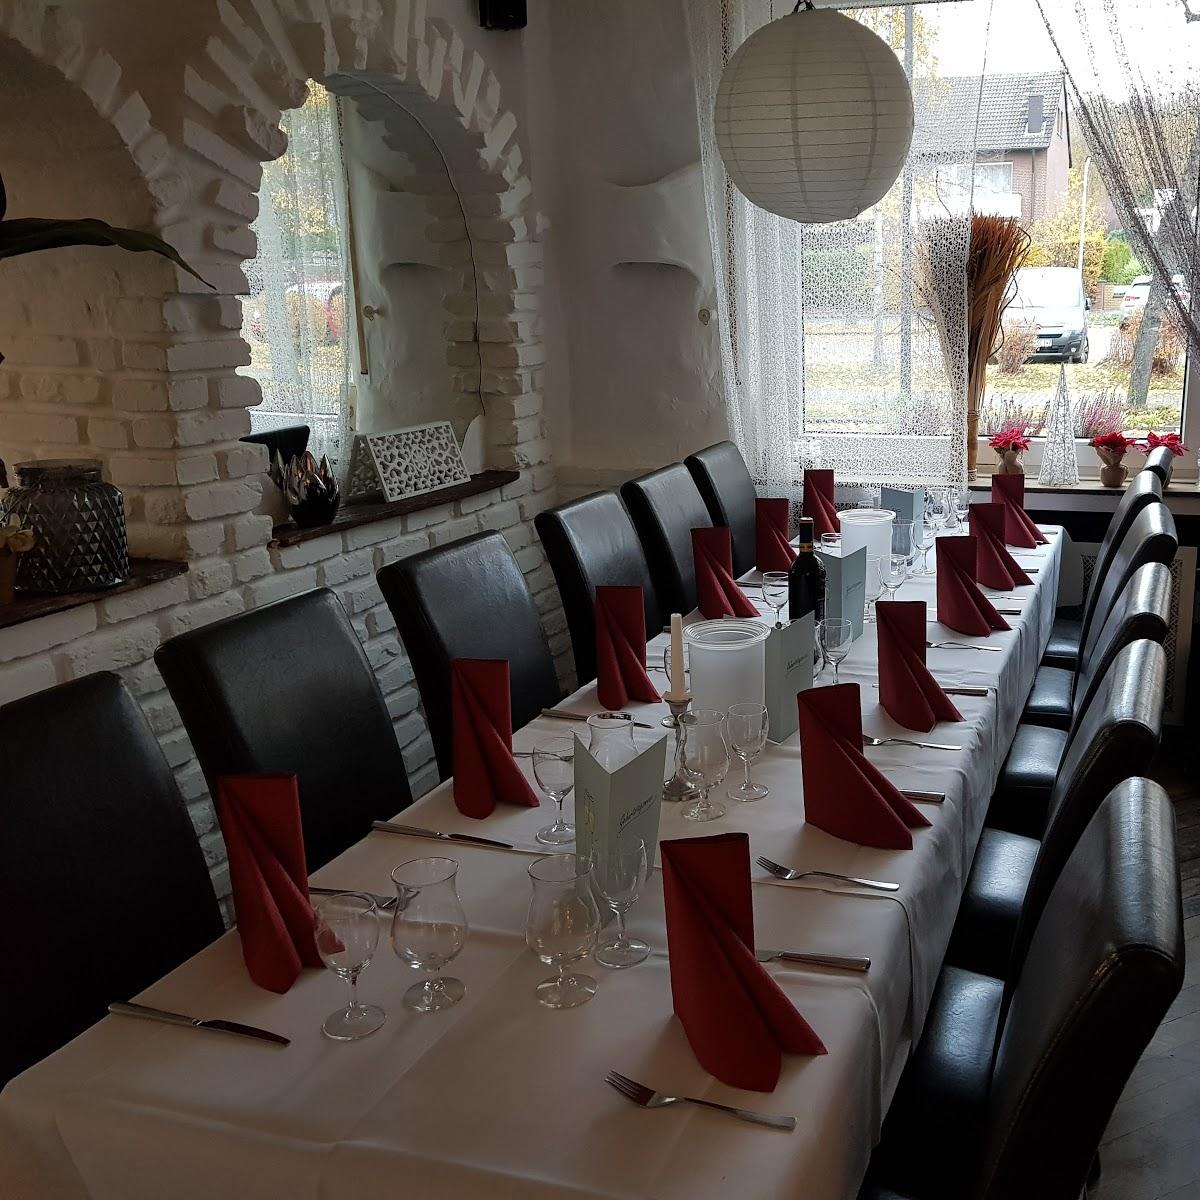 Restaurant "Plaka Griechisches Restaurant" in  Hamm